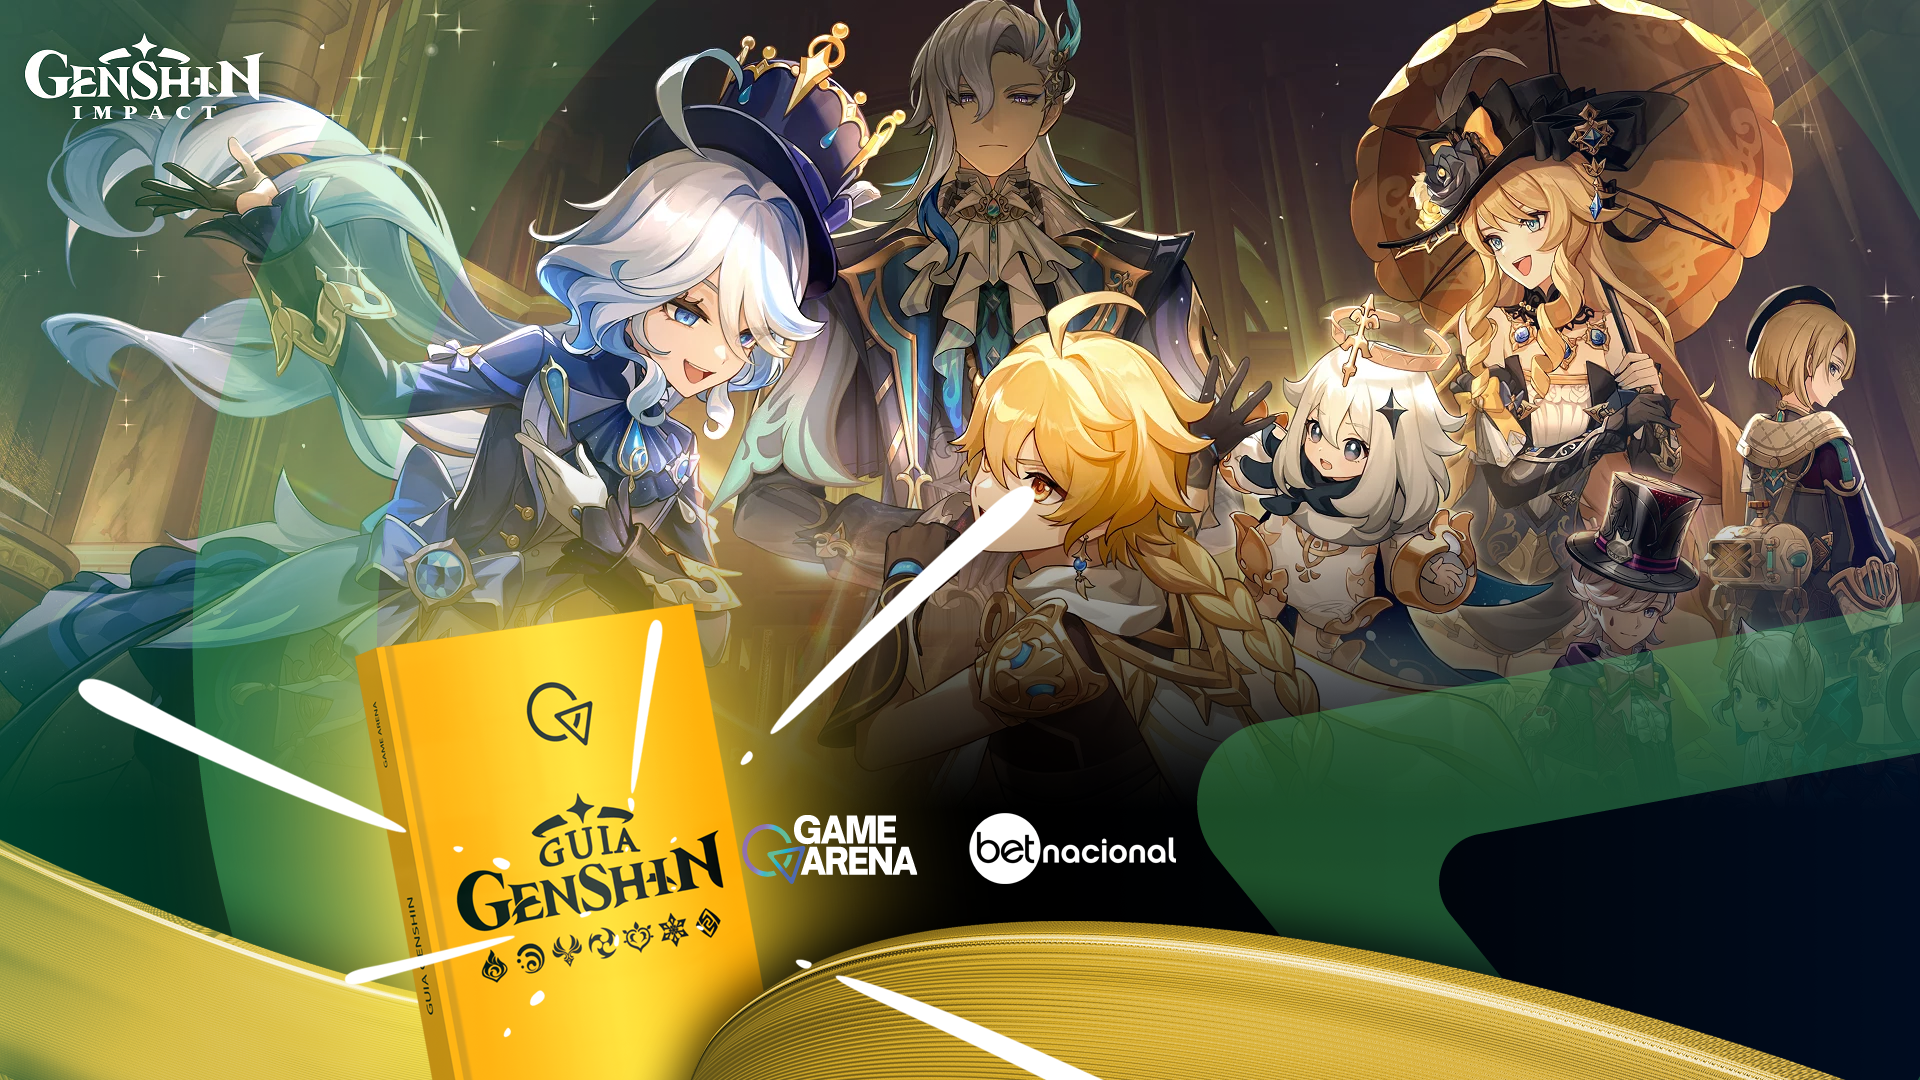 Genshin Impact': conheça os personagens mais poderosos do game